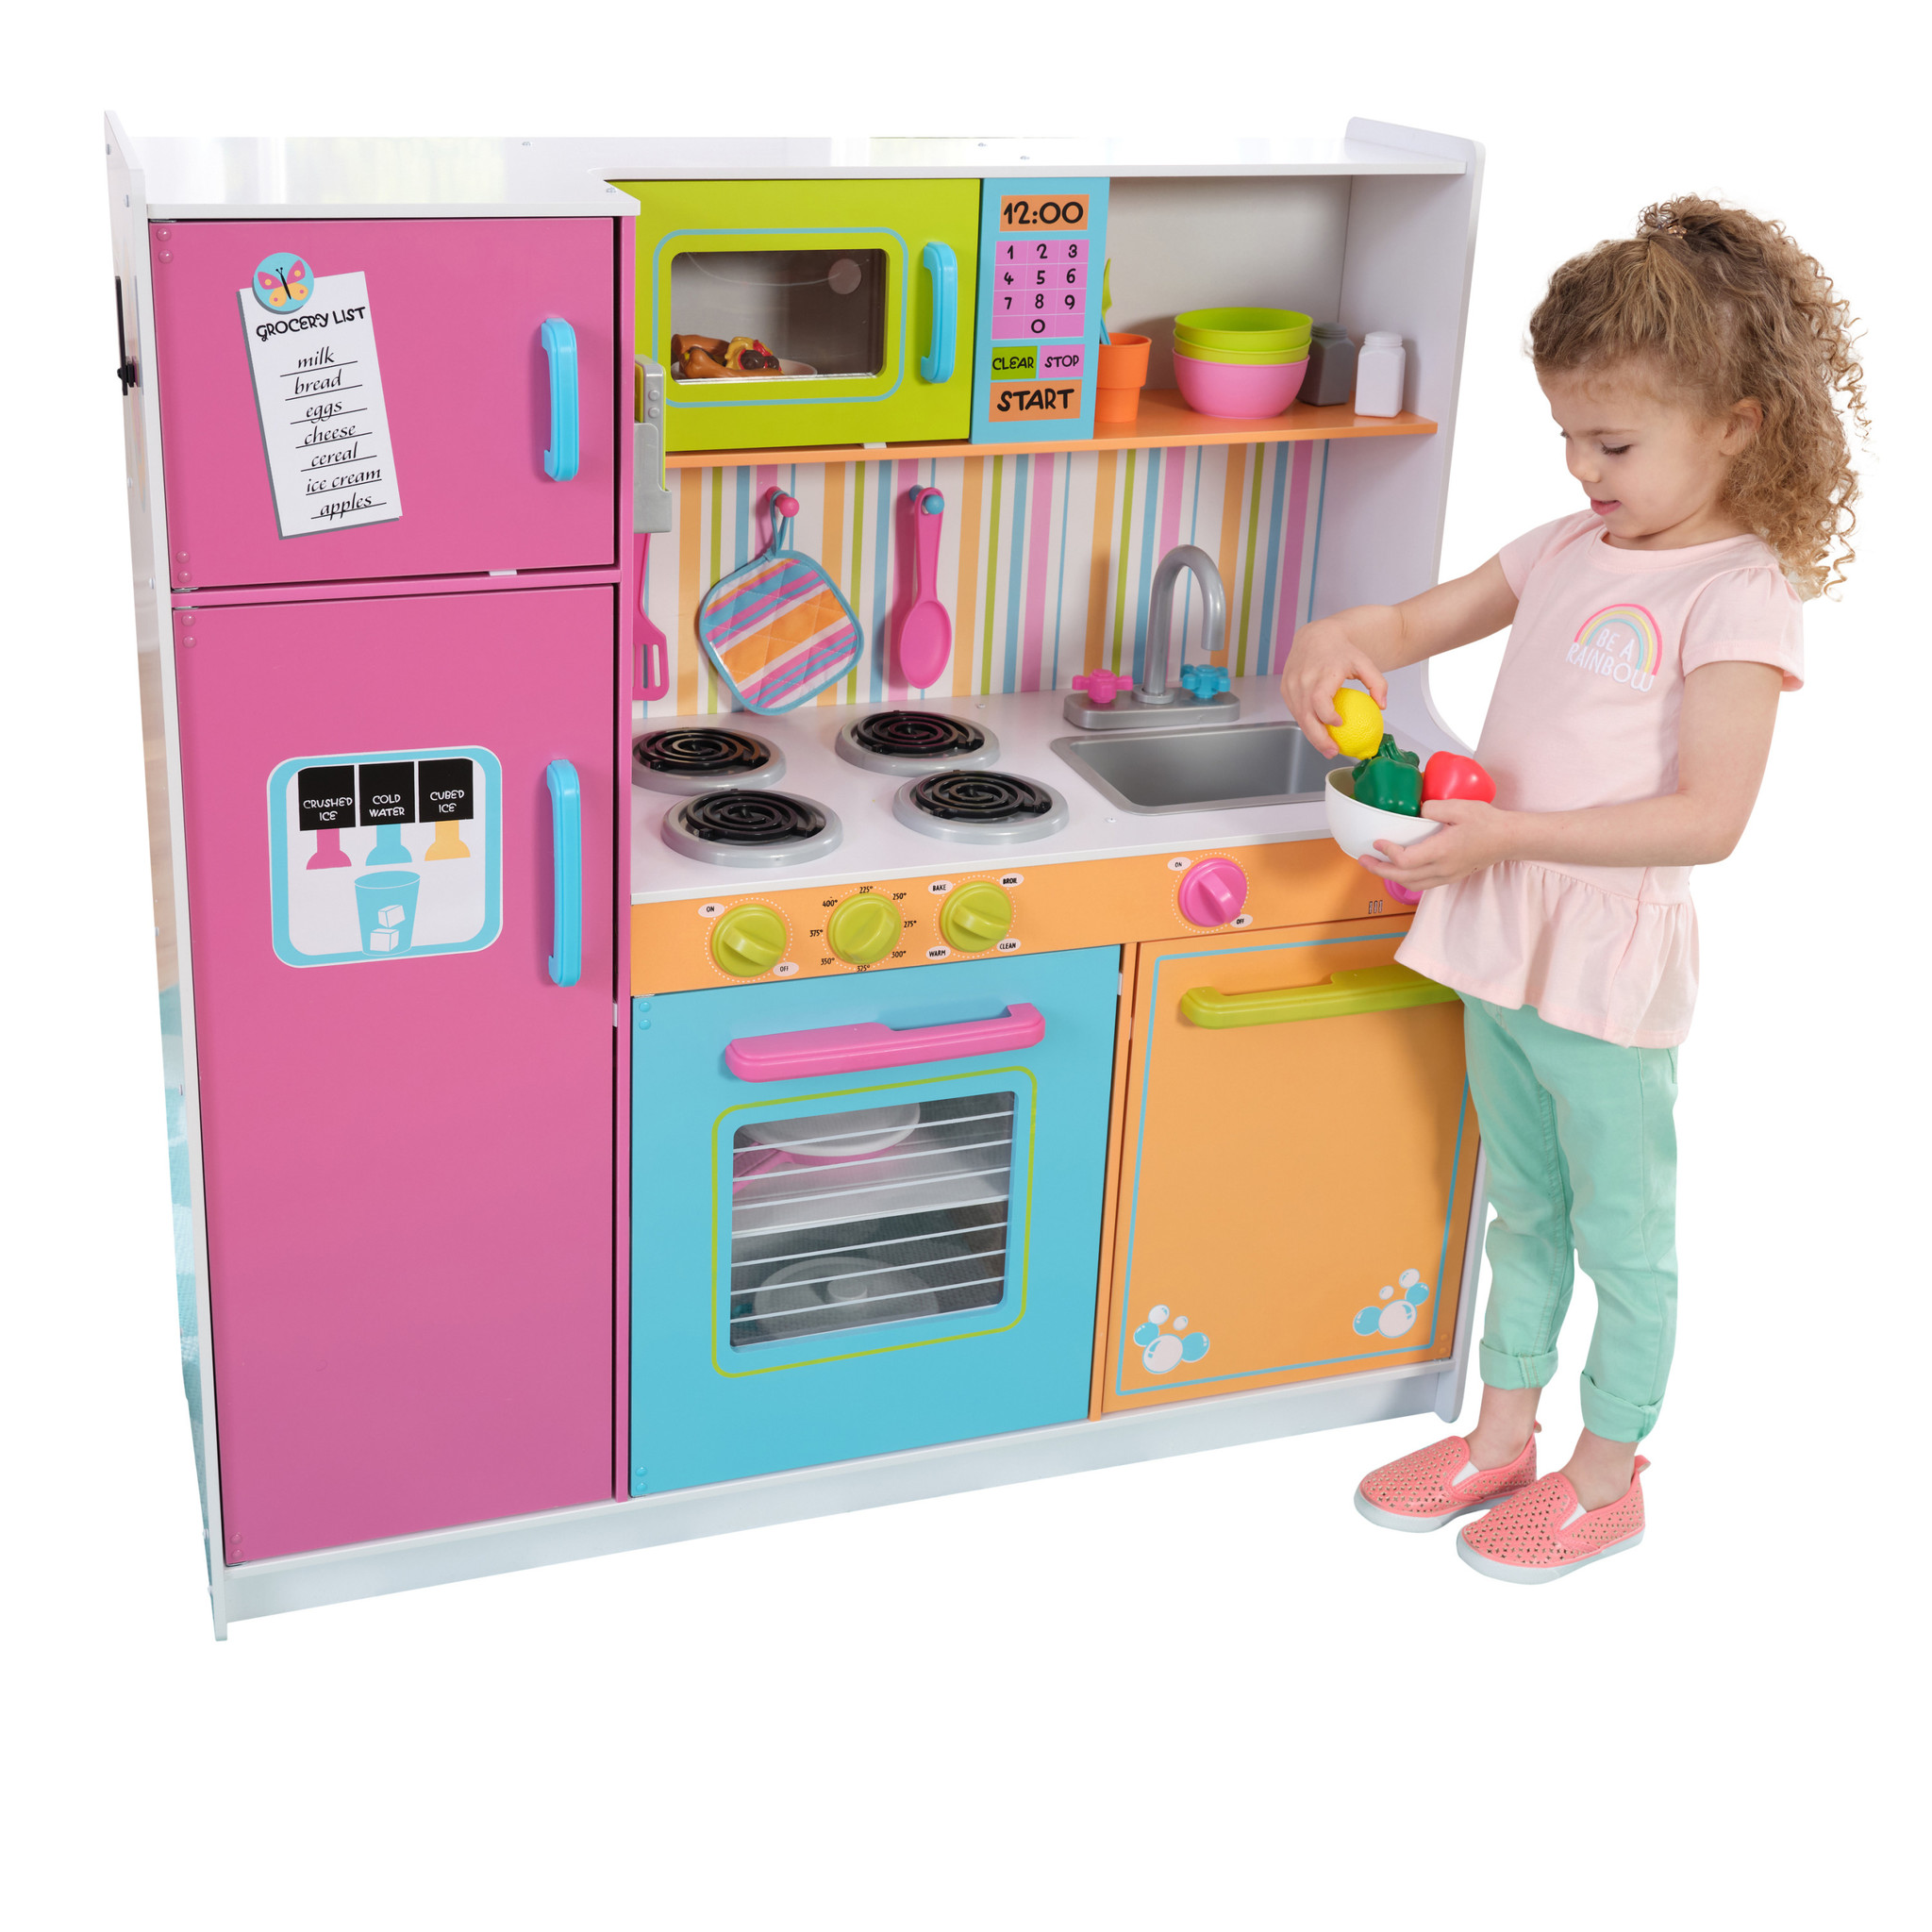 Civiel bijvoeglijk naamwoord Verleiden Speelkeuken meisjes - Luxe meisjes keuken in prachtige kleuren - Kinderspel  ®